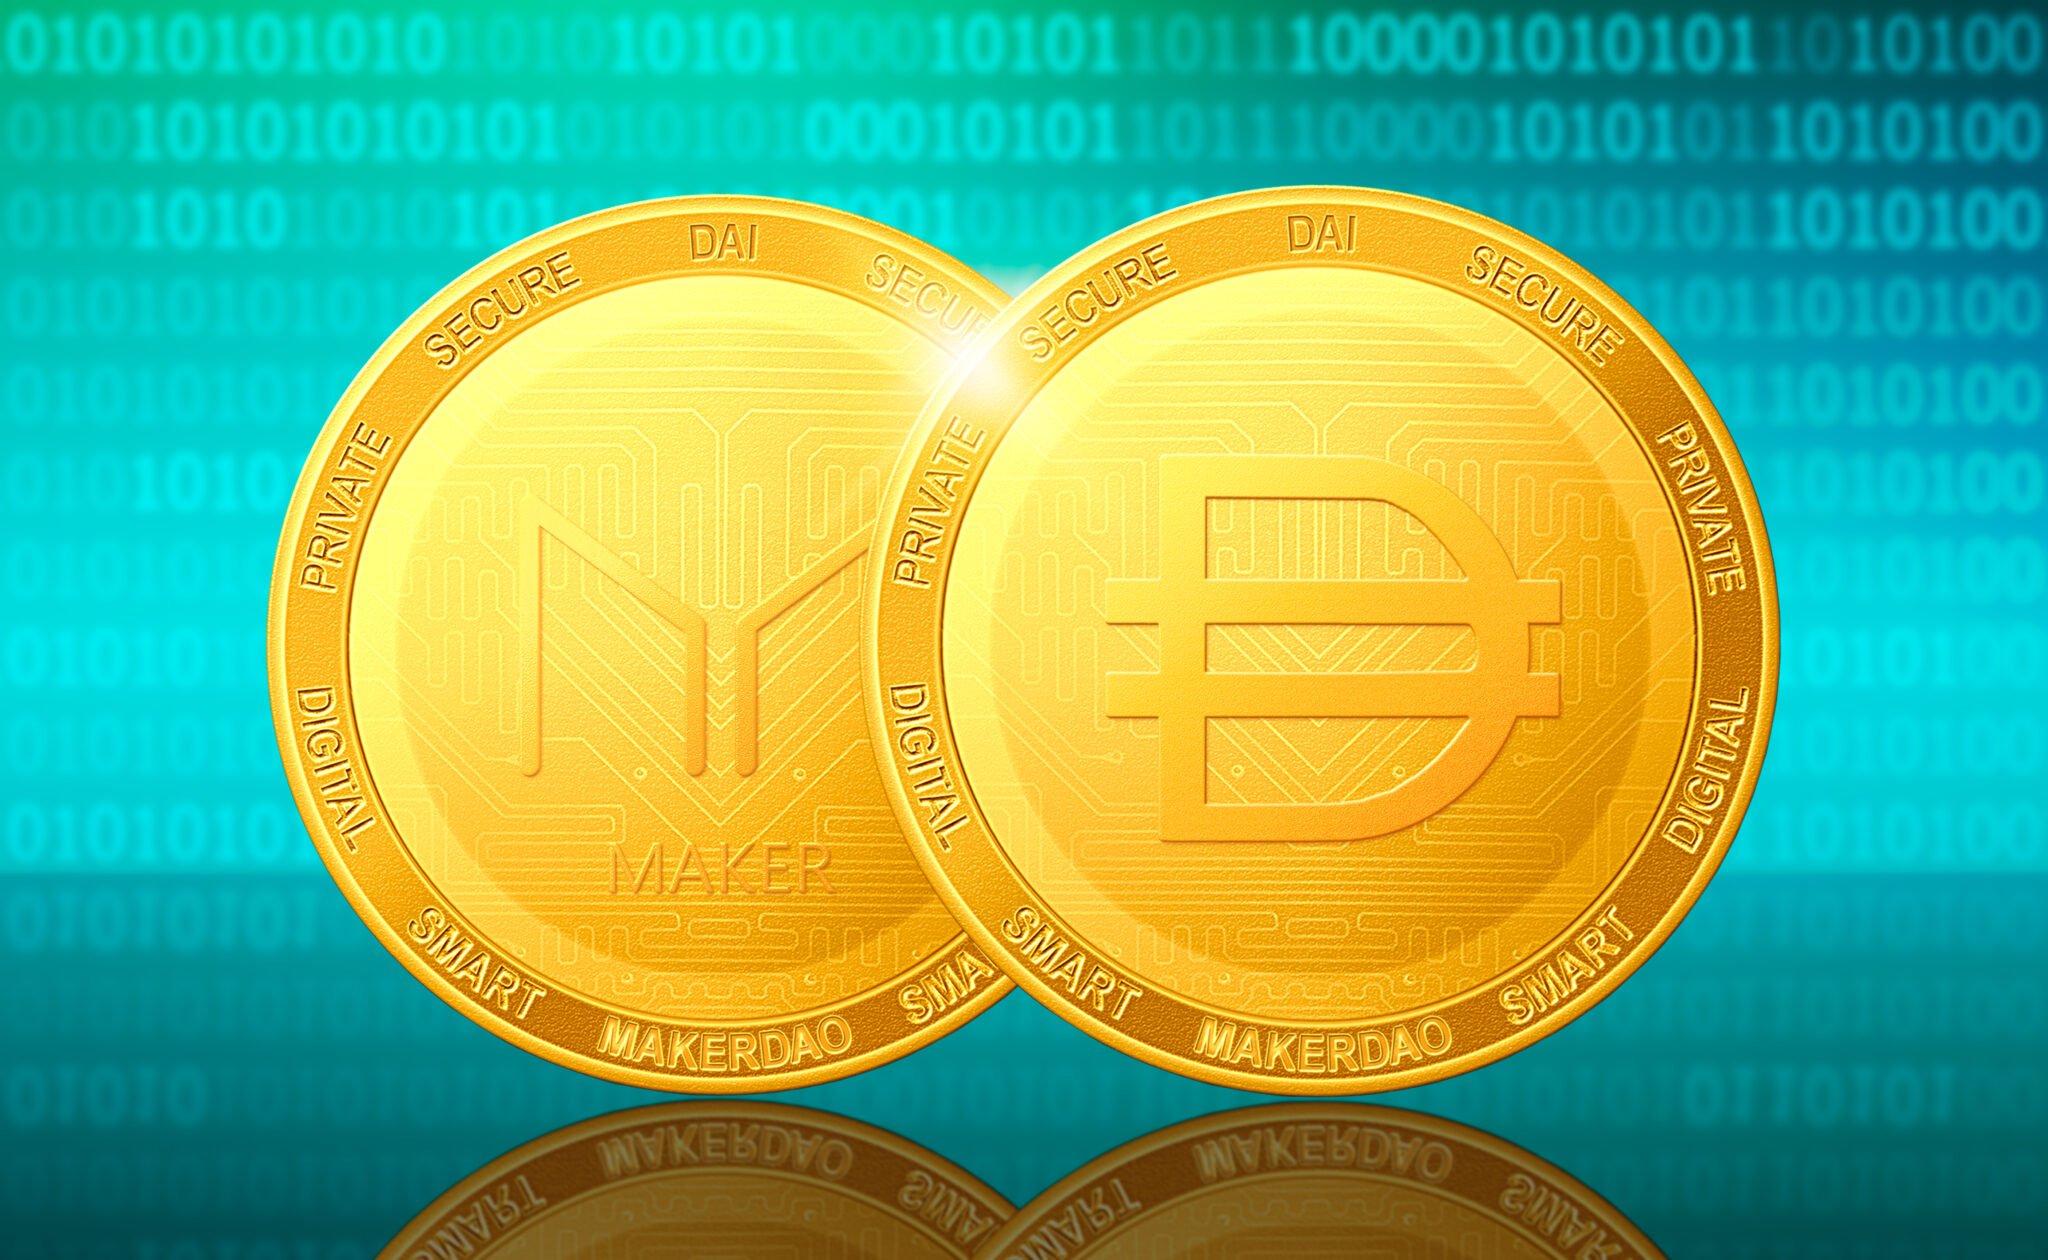 MakerDAO DAI cryptocurrency; MakerDAO DAI golden coins